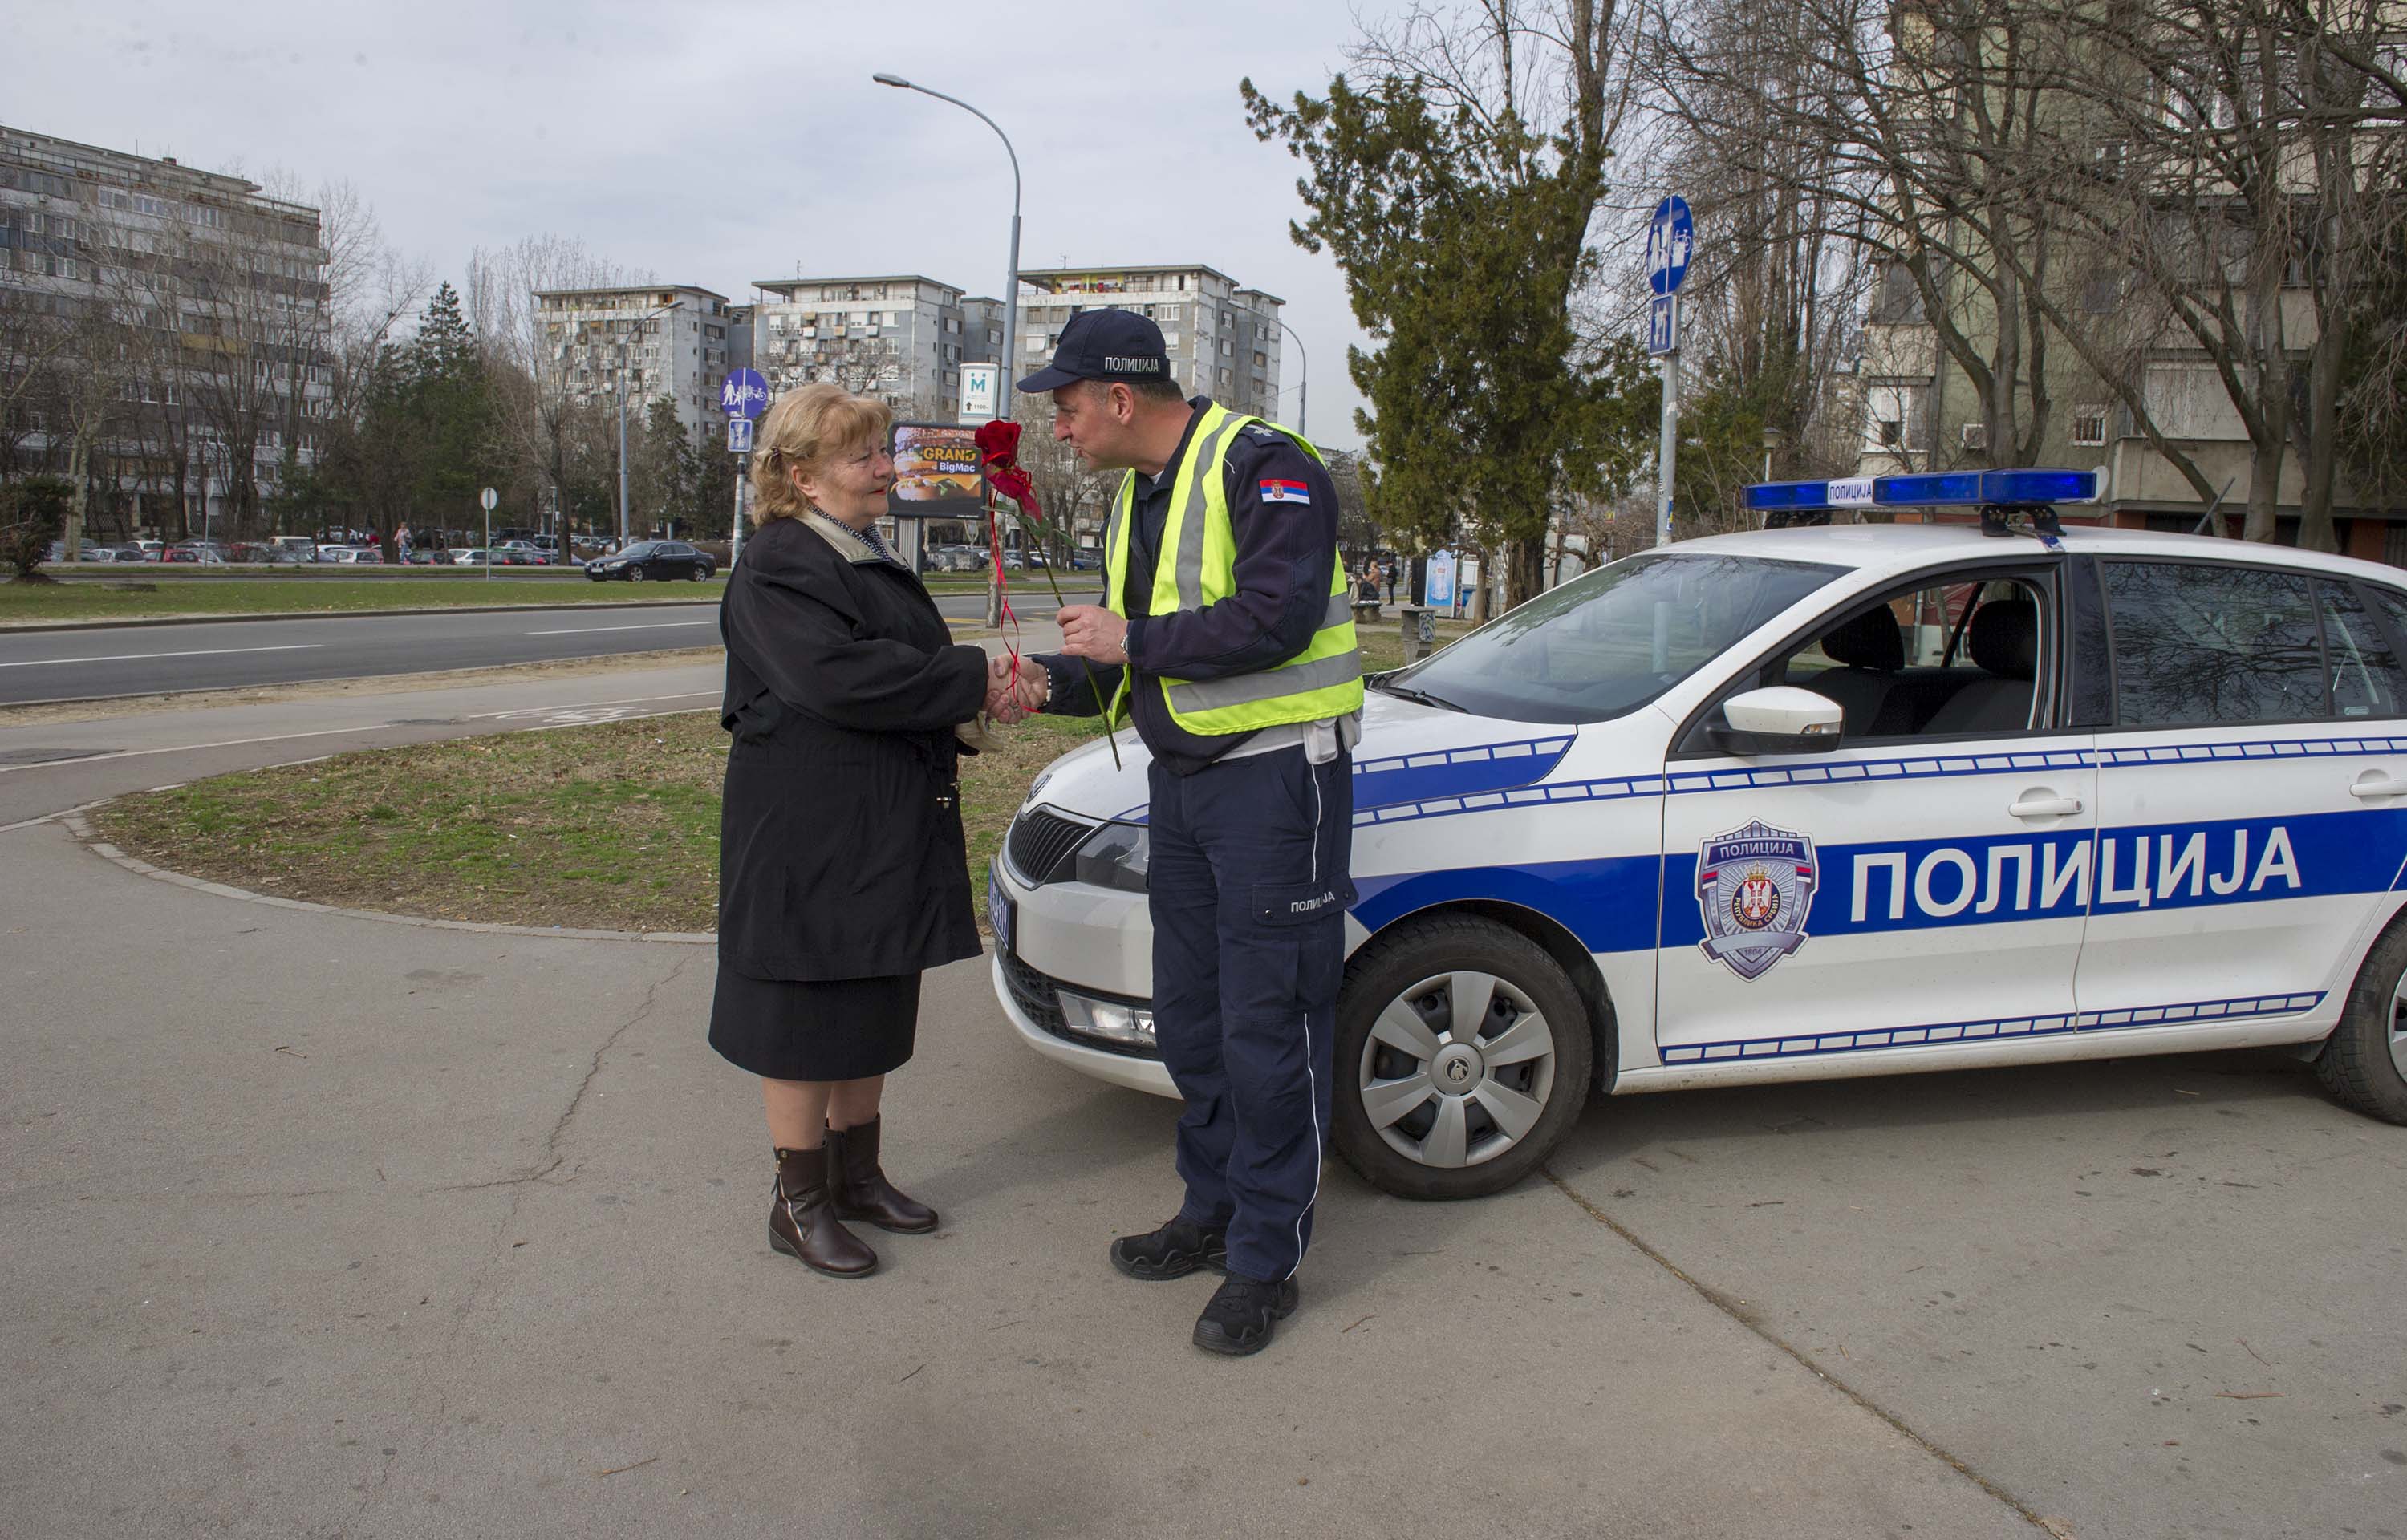 Pripadnici MUP-a prilkom redovne kontrole saobraćaja, čestitali svojim sugrađankama Osmi mart - Dan žena